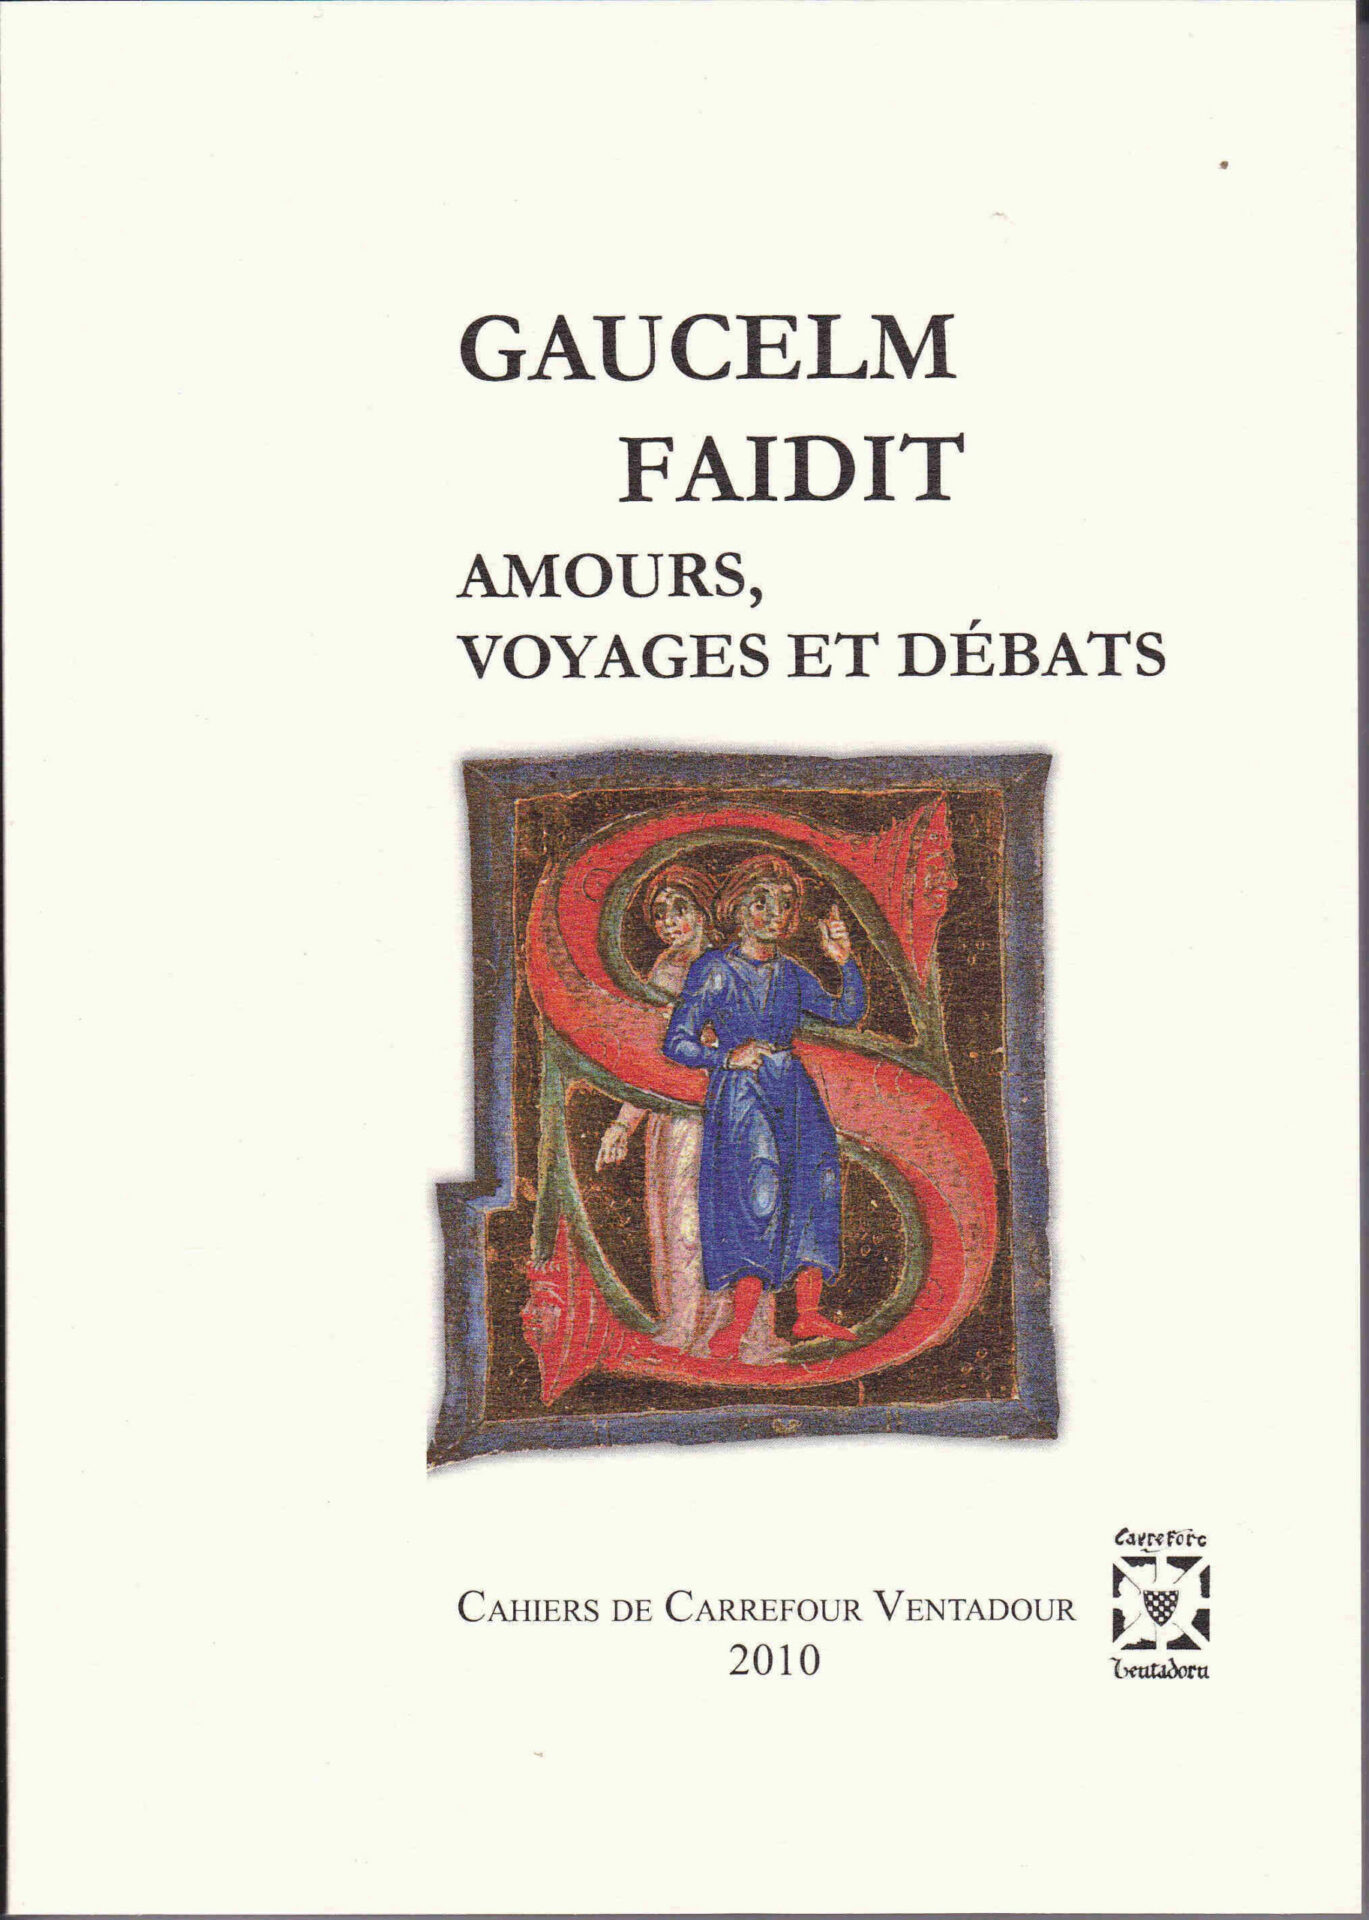 Gaulcem Faidit, amours, voyages et débats